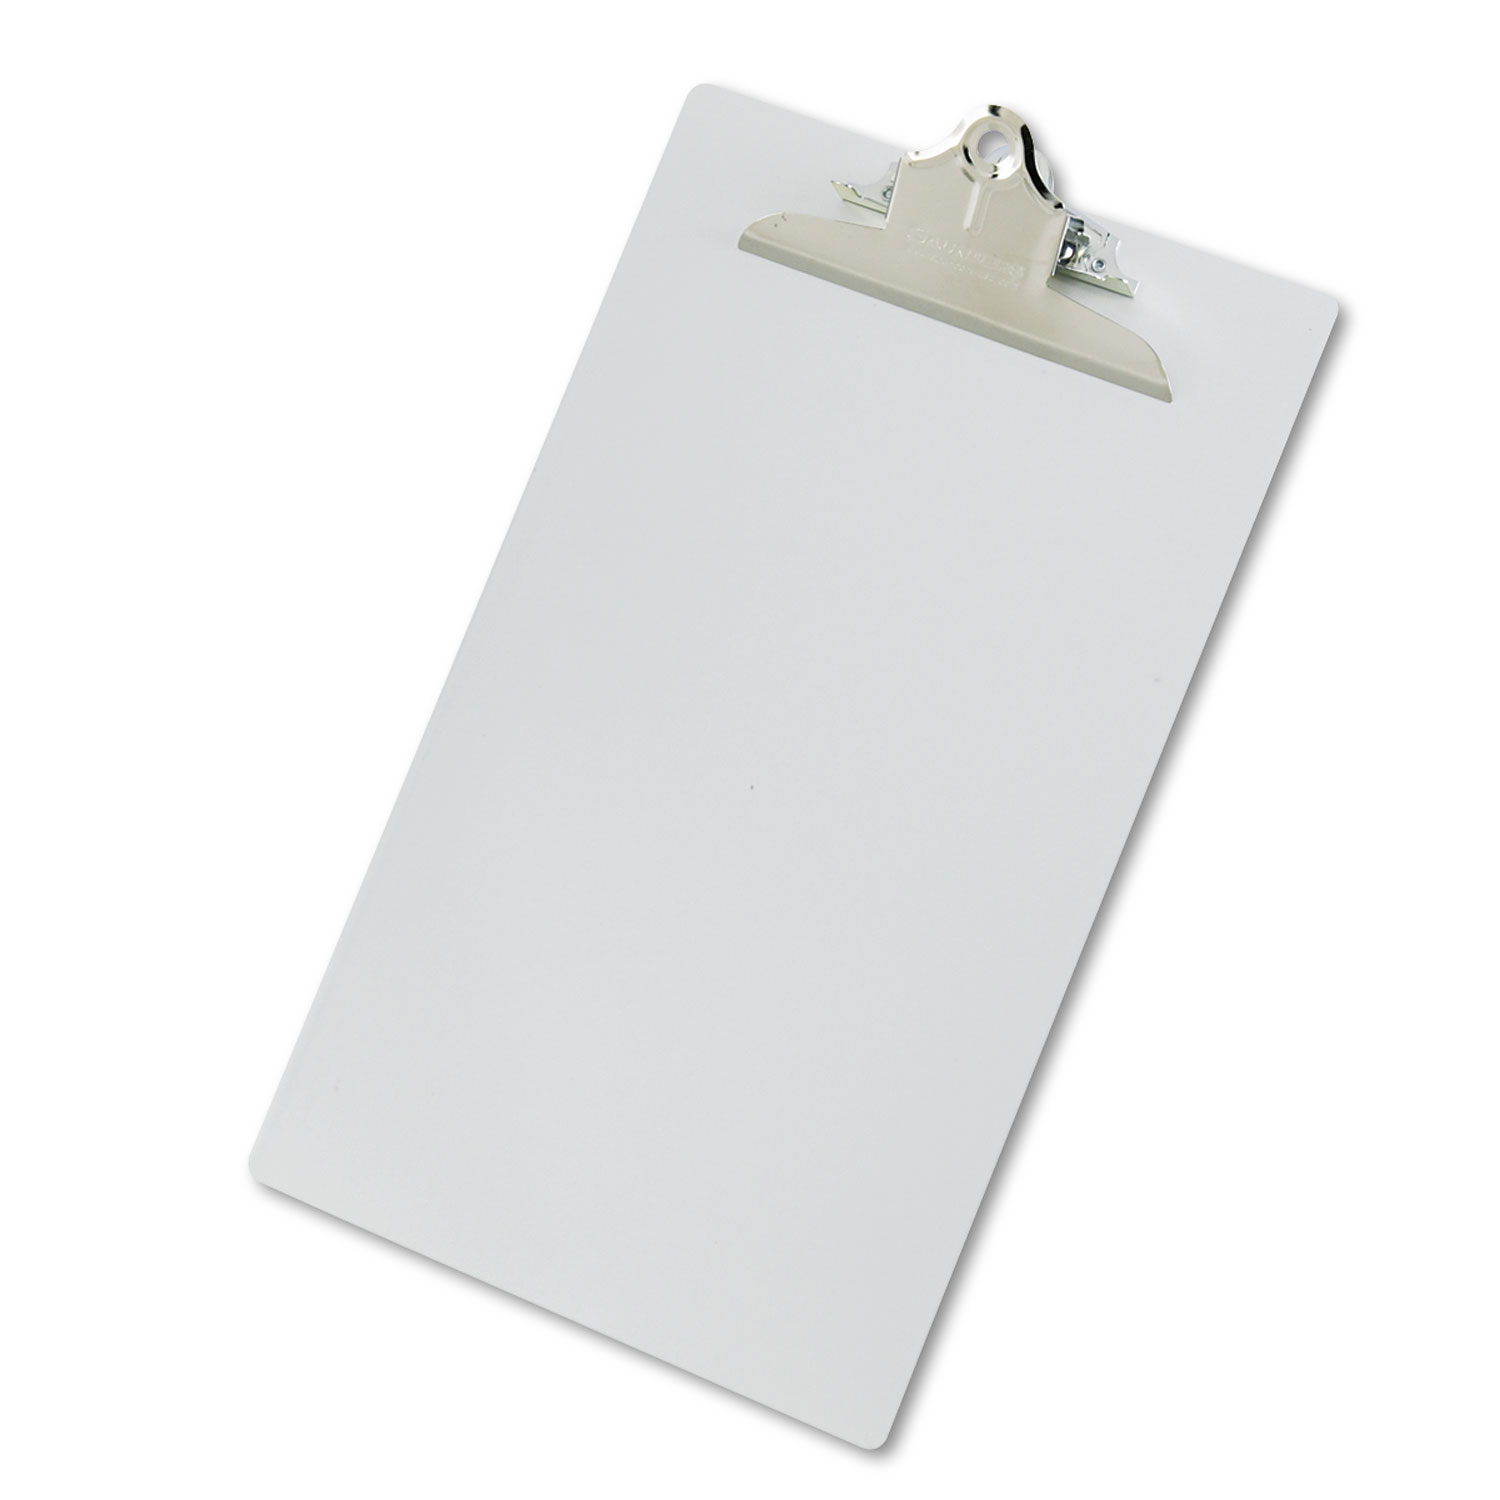 Aluminum Clipboard w/High-Capacity Clip, 1" Clip Cap, 8 1/2 x 14 Sheets, Silver